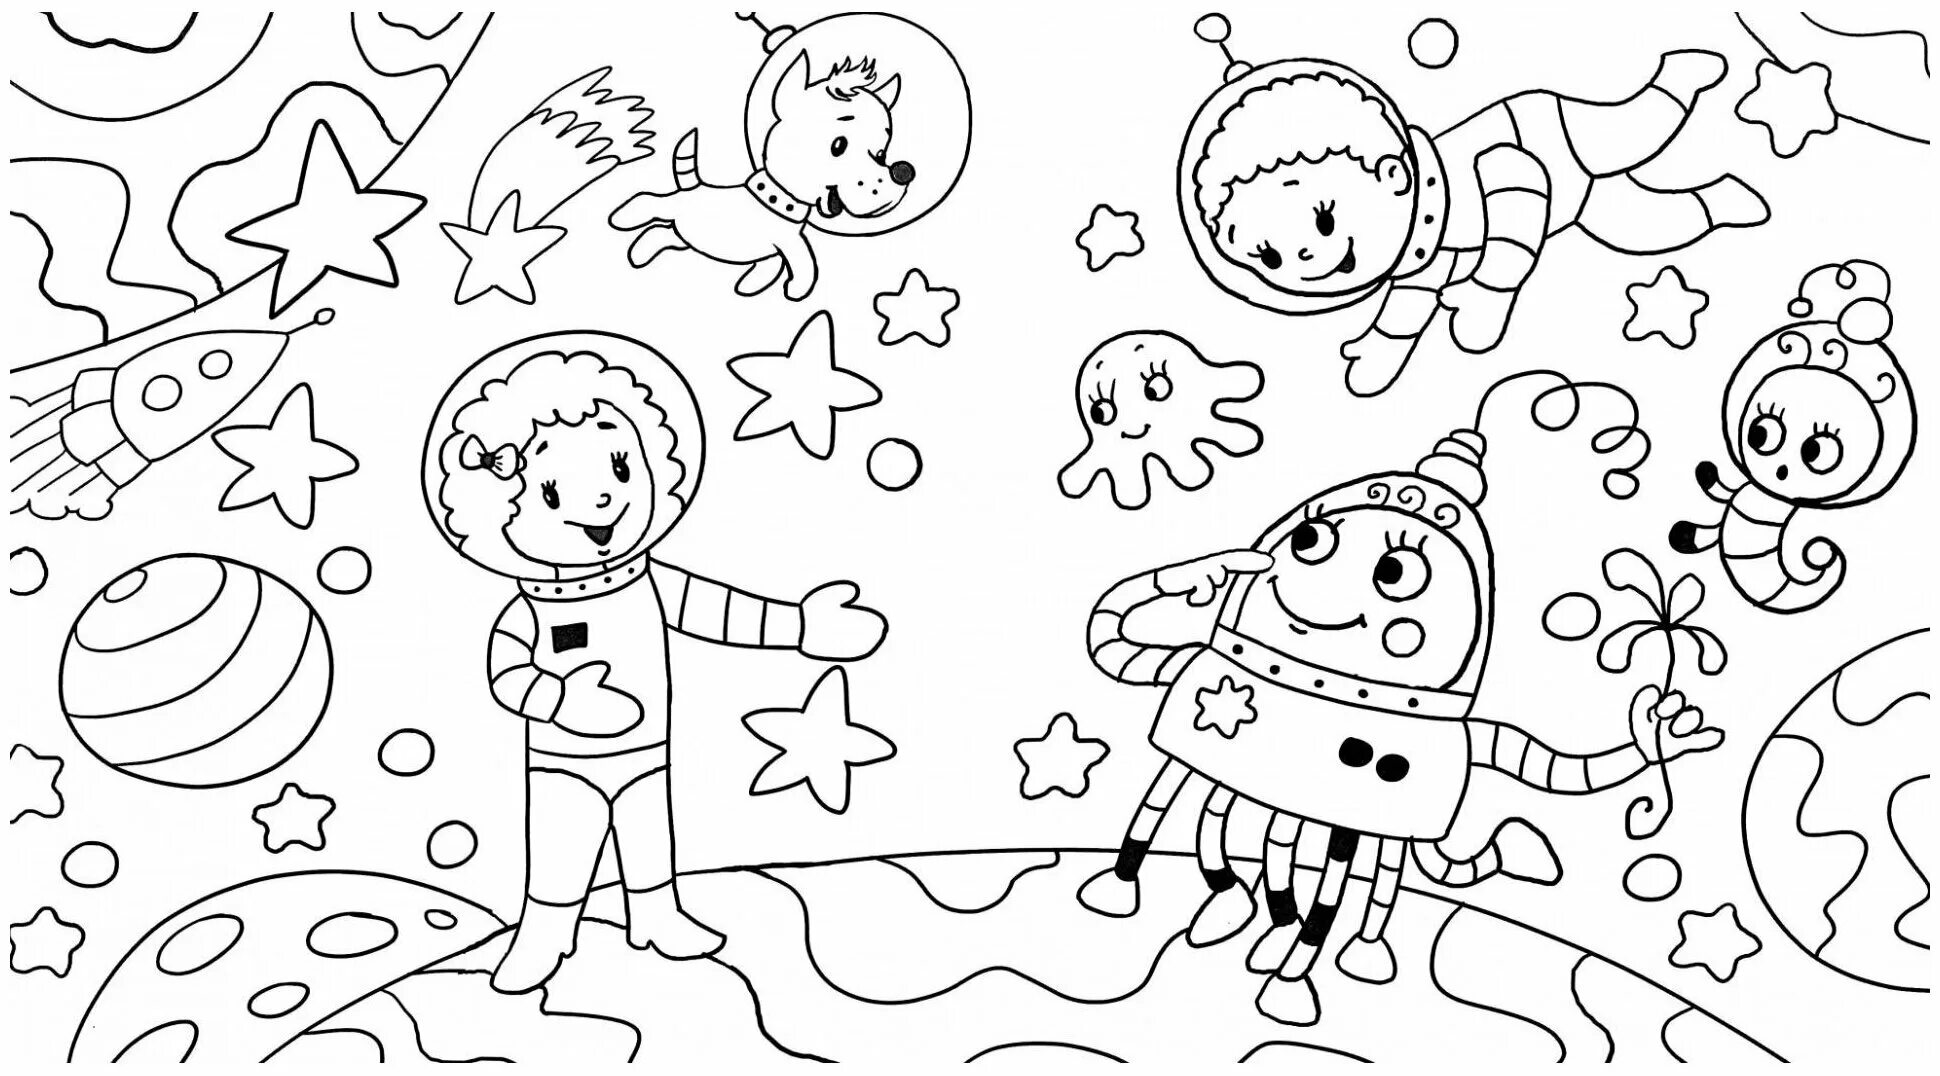 Космос для детей 7 8 лет. Раскраска. В космосе. Космос раскраска для детей. Космические раскраски для детей. Раскраски для детей космас.